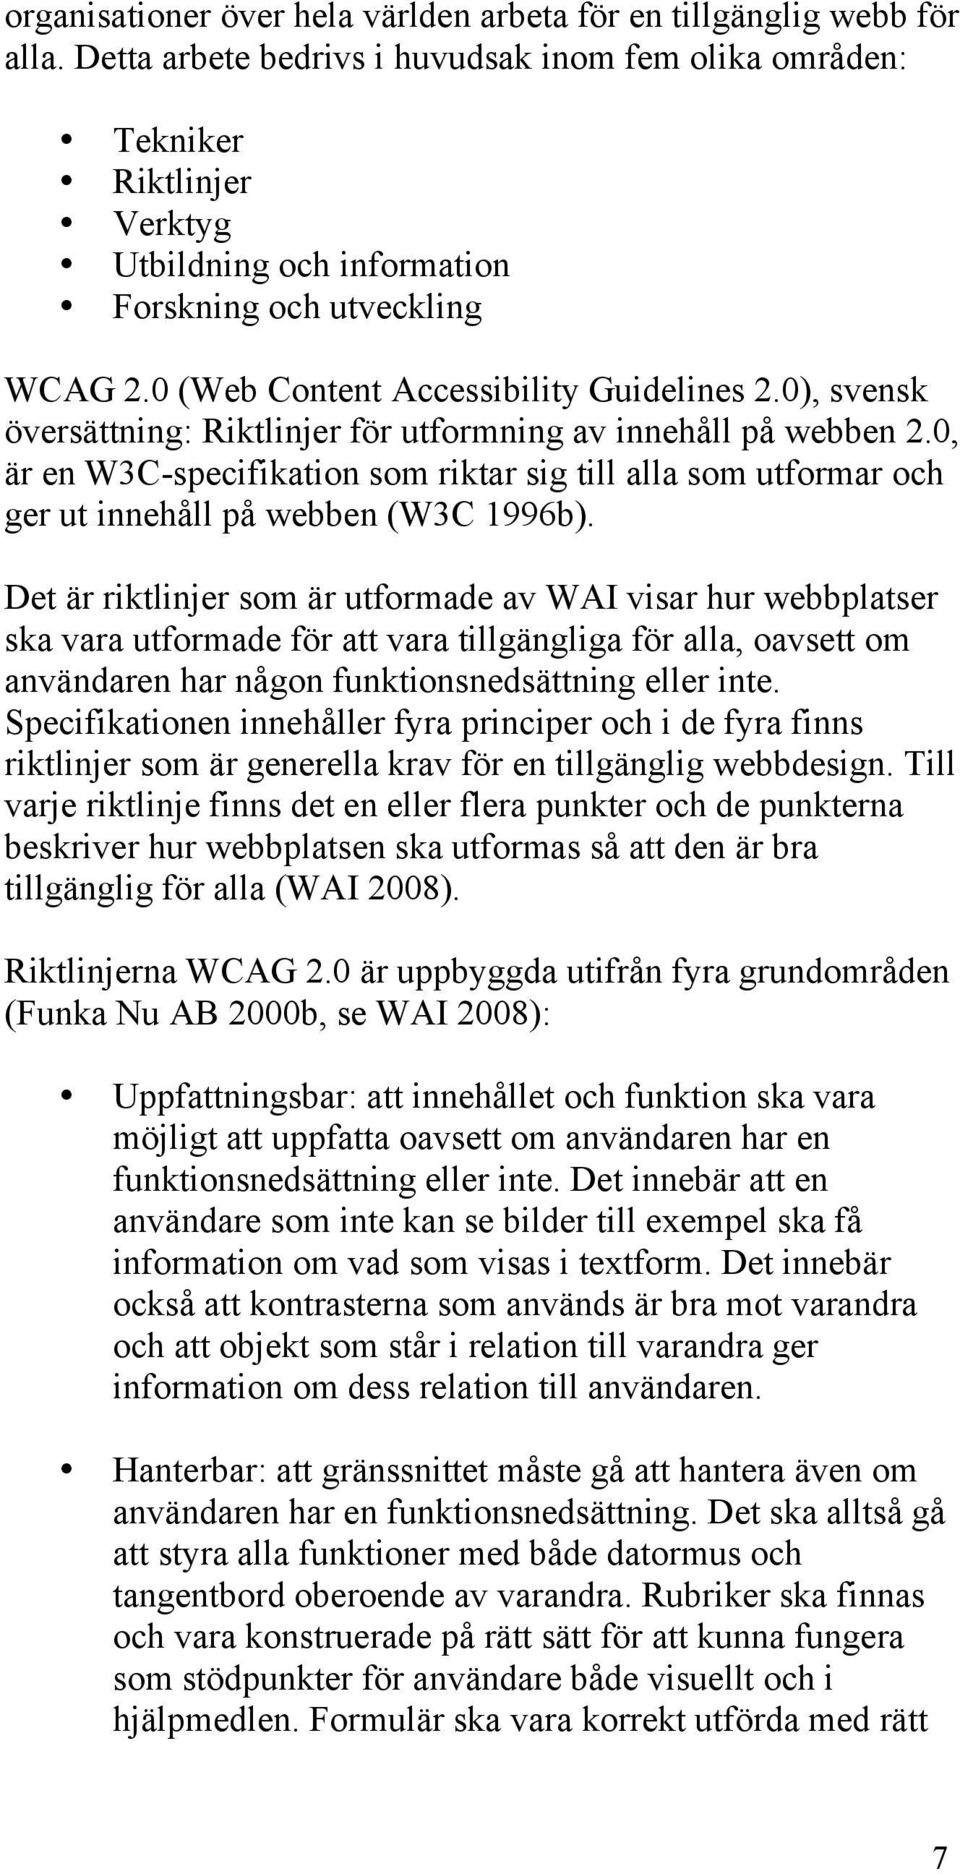 0), svensk översättning: Riktlinjer för utformning av innehåll på webben 2.0, är en W3C-specifikation som riktar sig till alla som utformar och ger ut innehåll på webben (W3C 1996b).